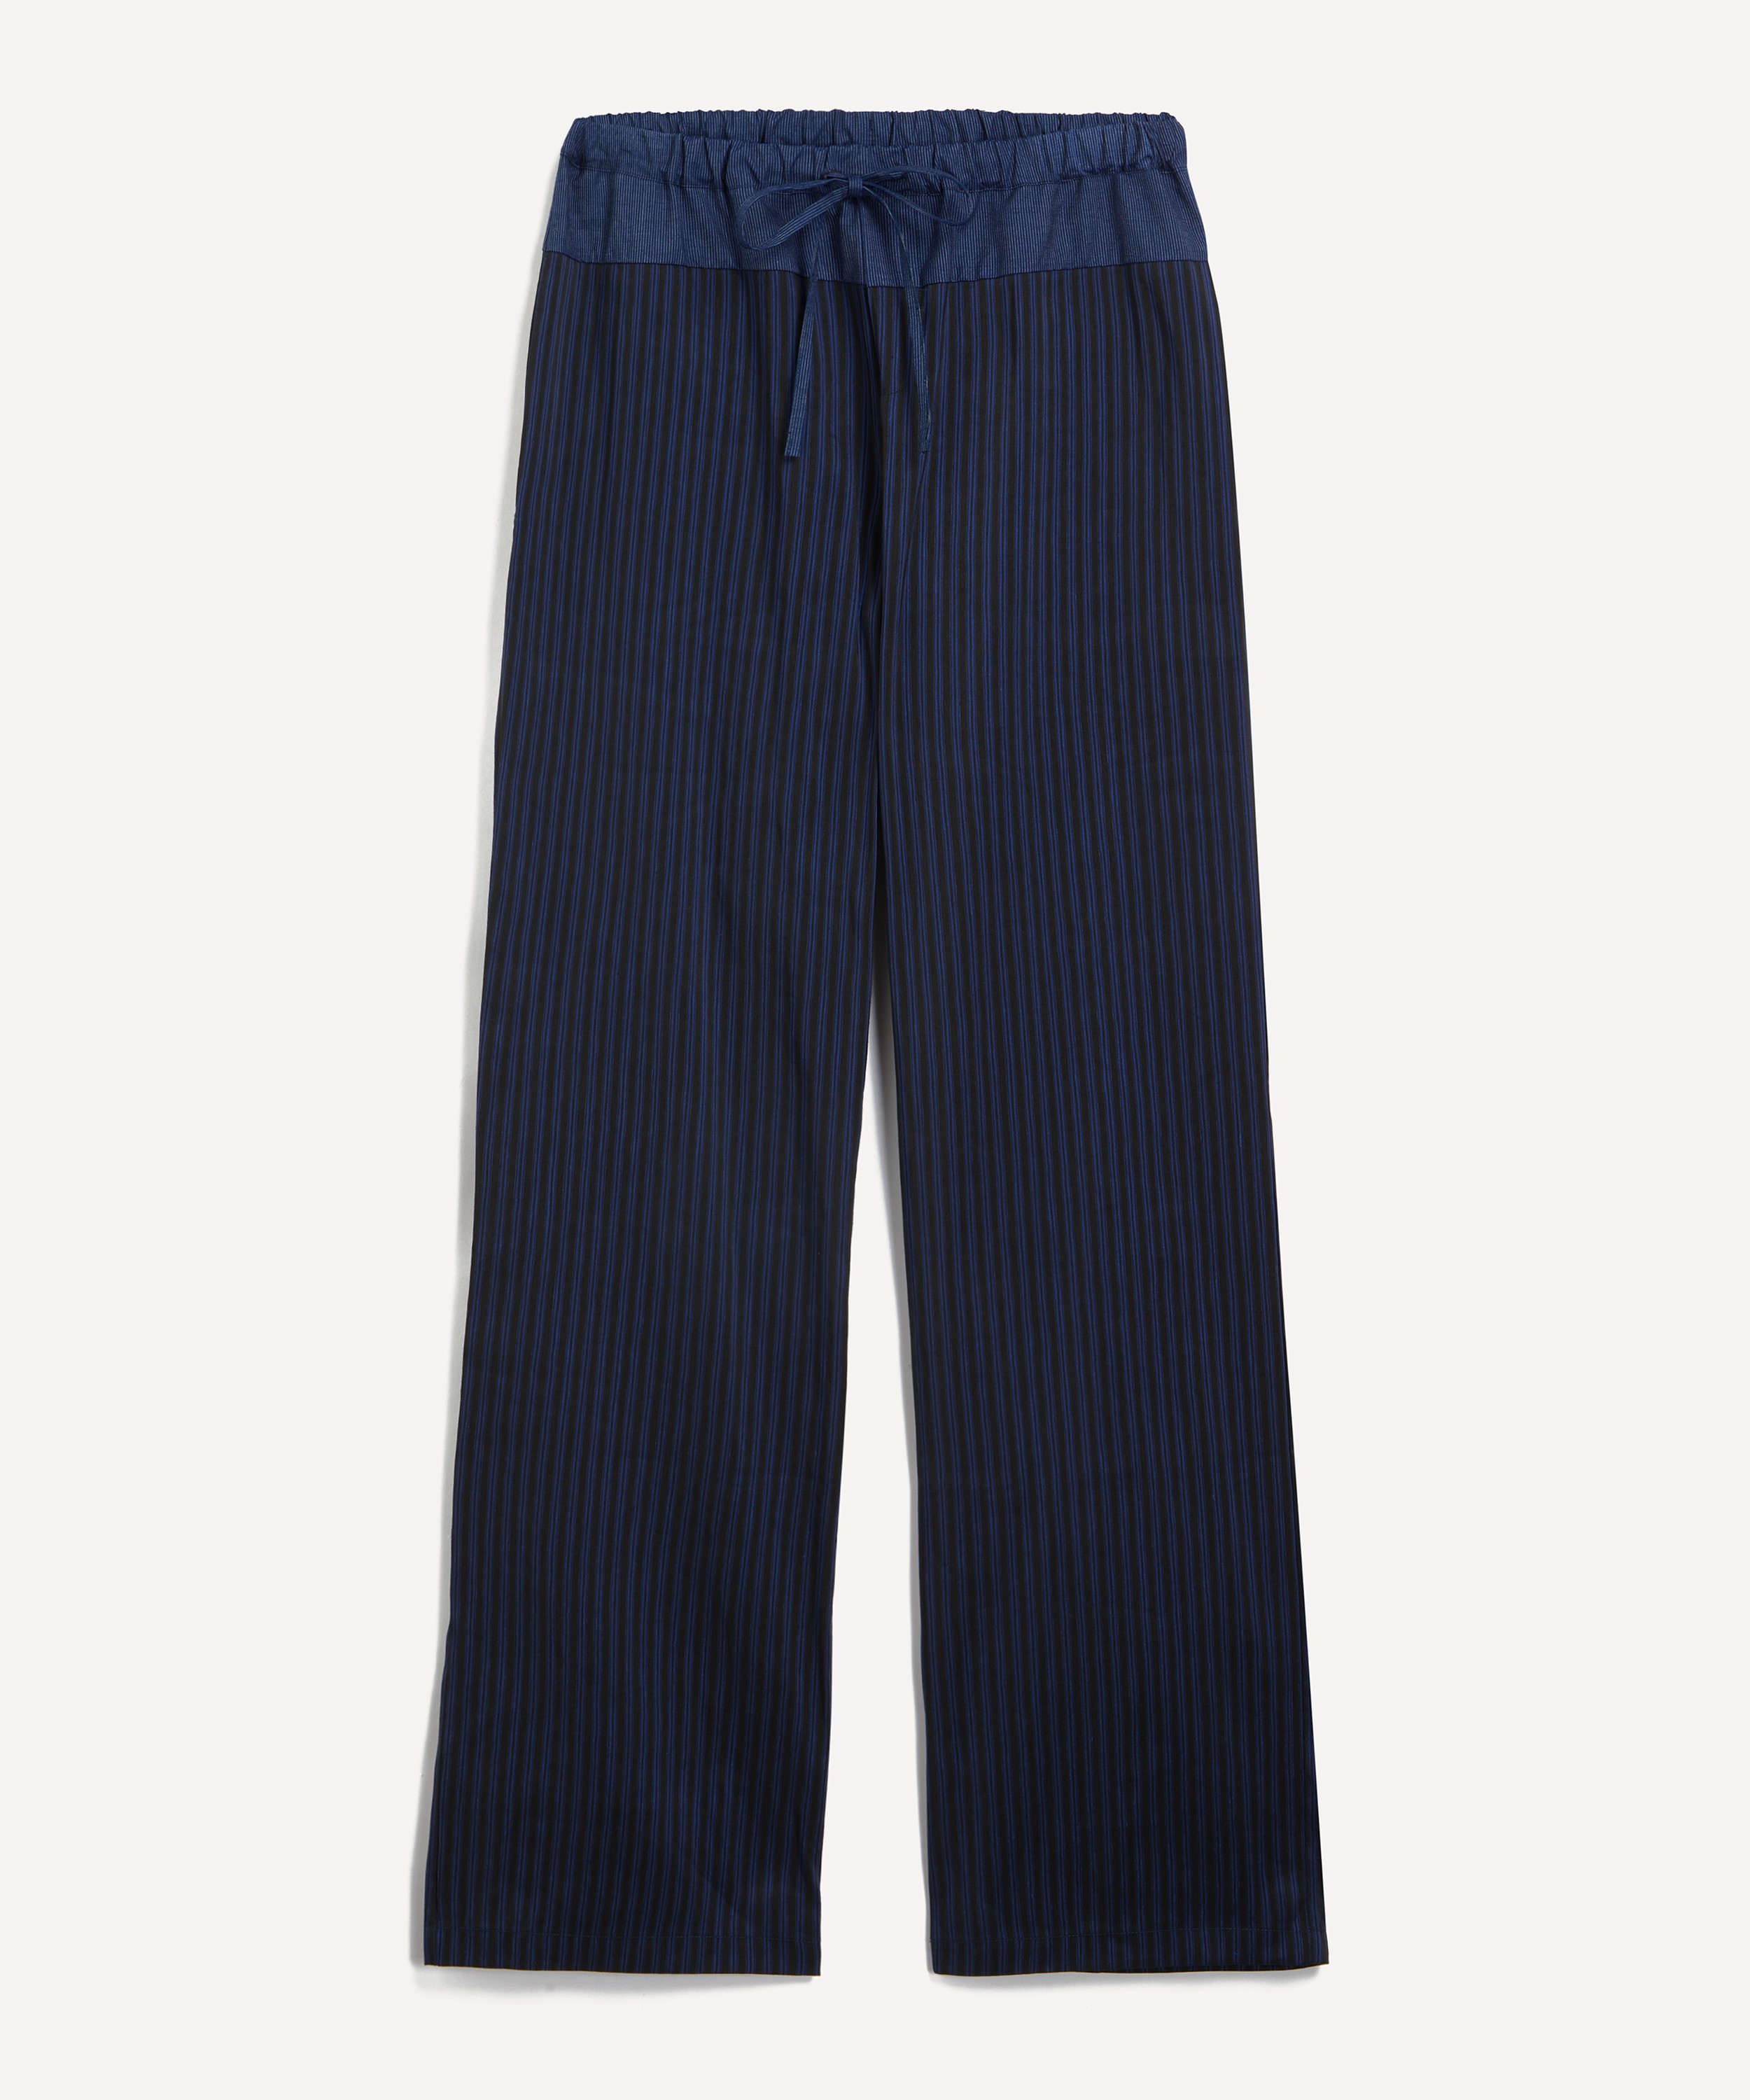 Paloma Wool - Olga Loose Linen Striped Drawstring Trousers